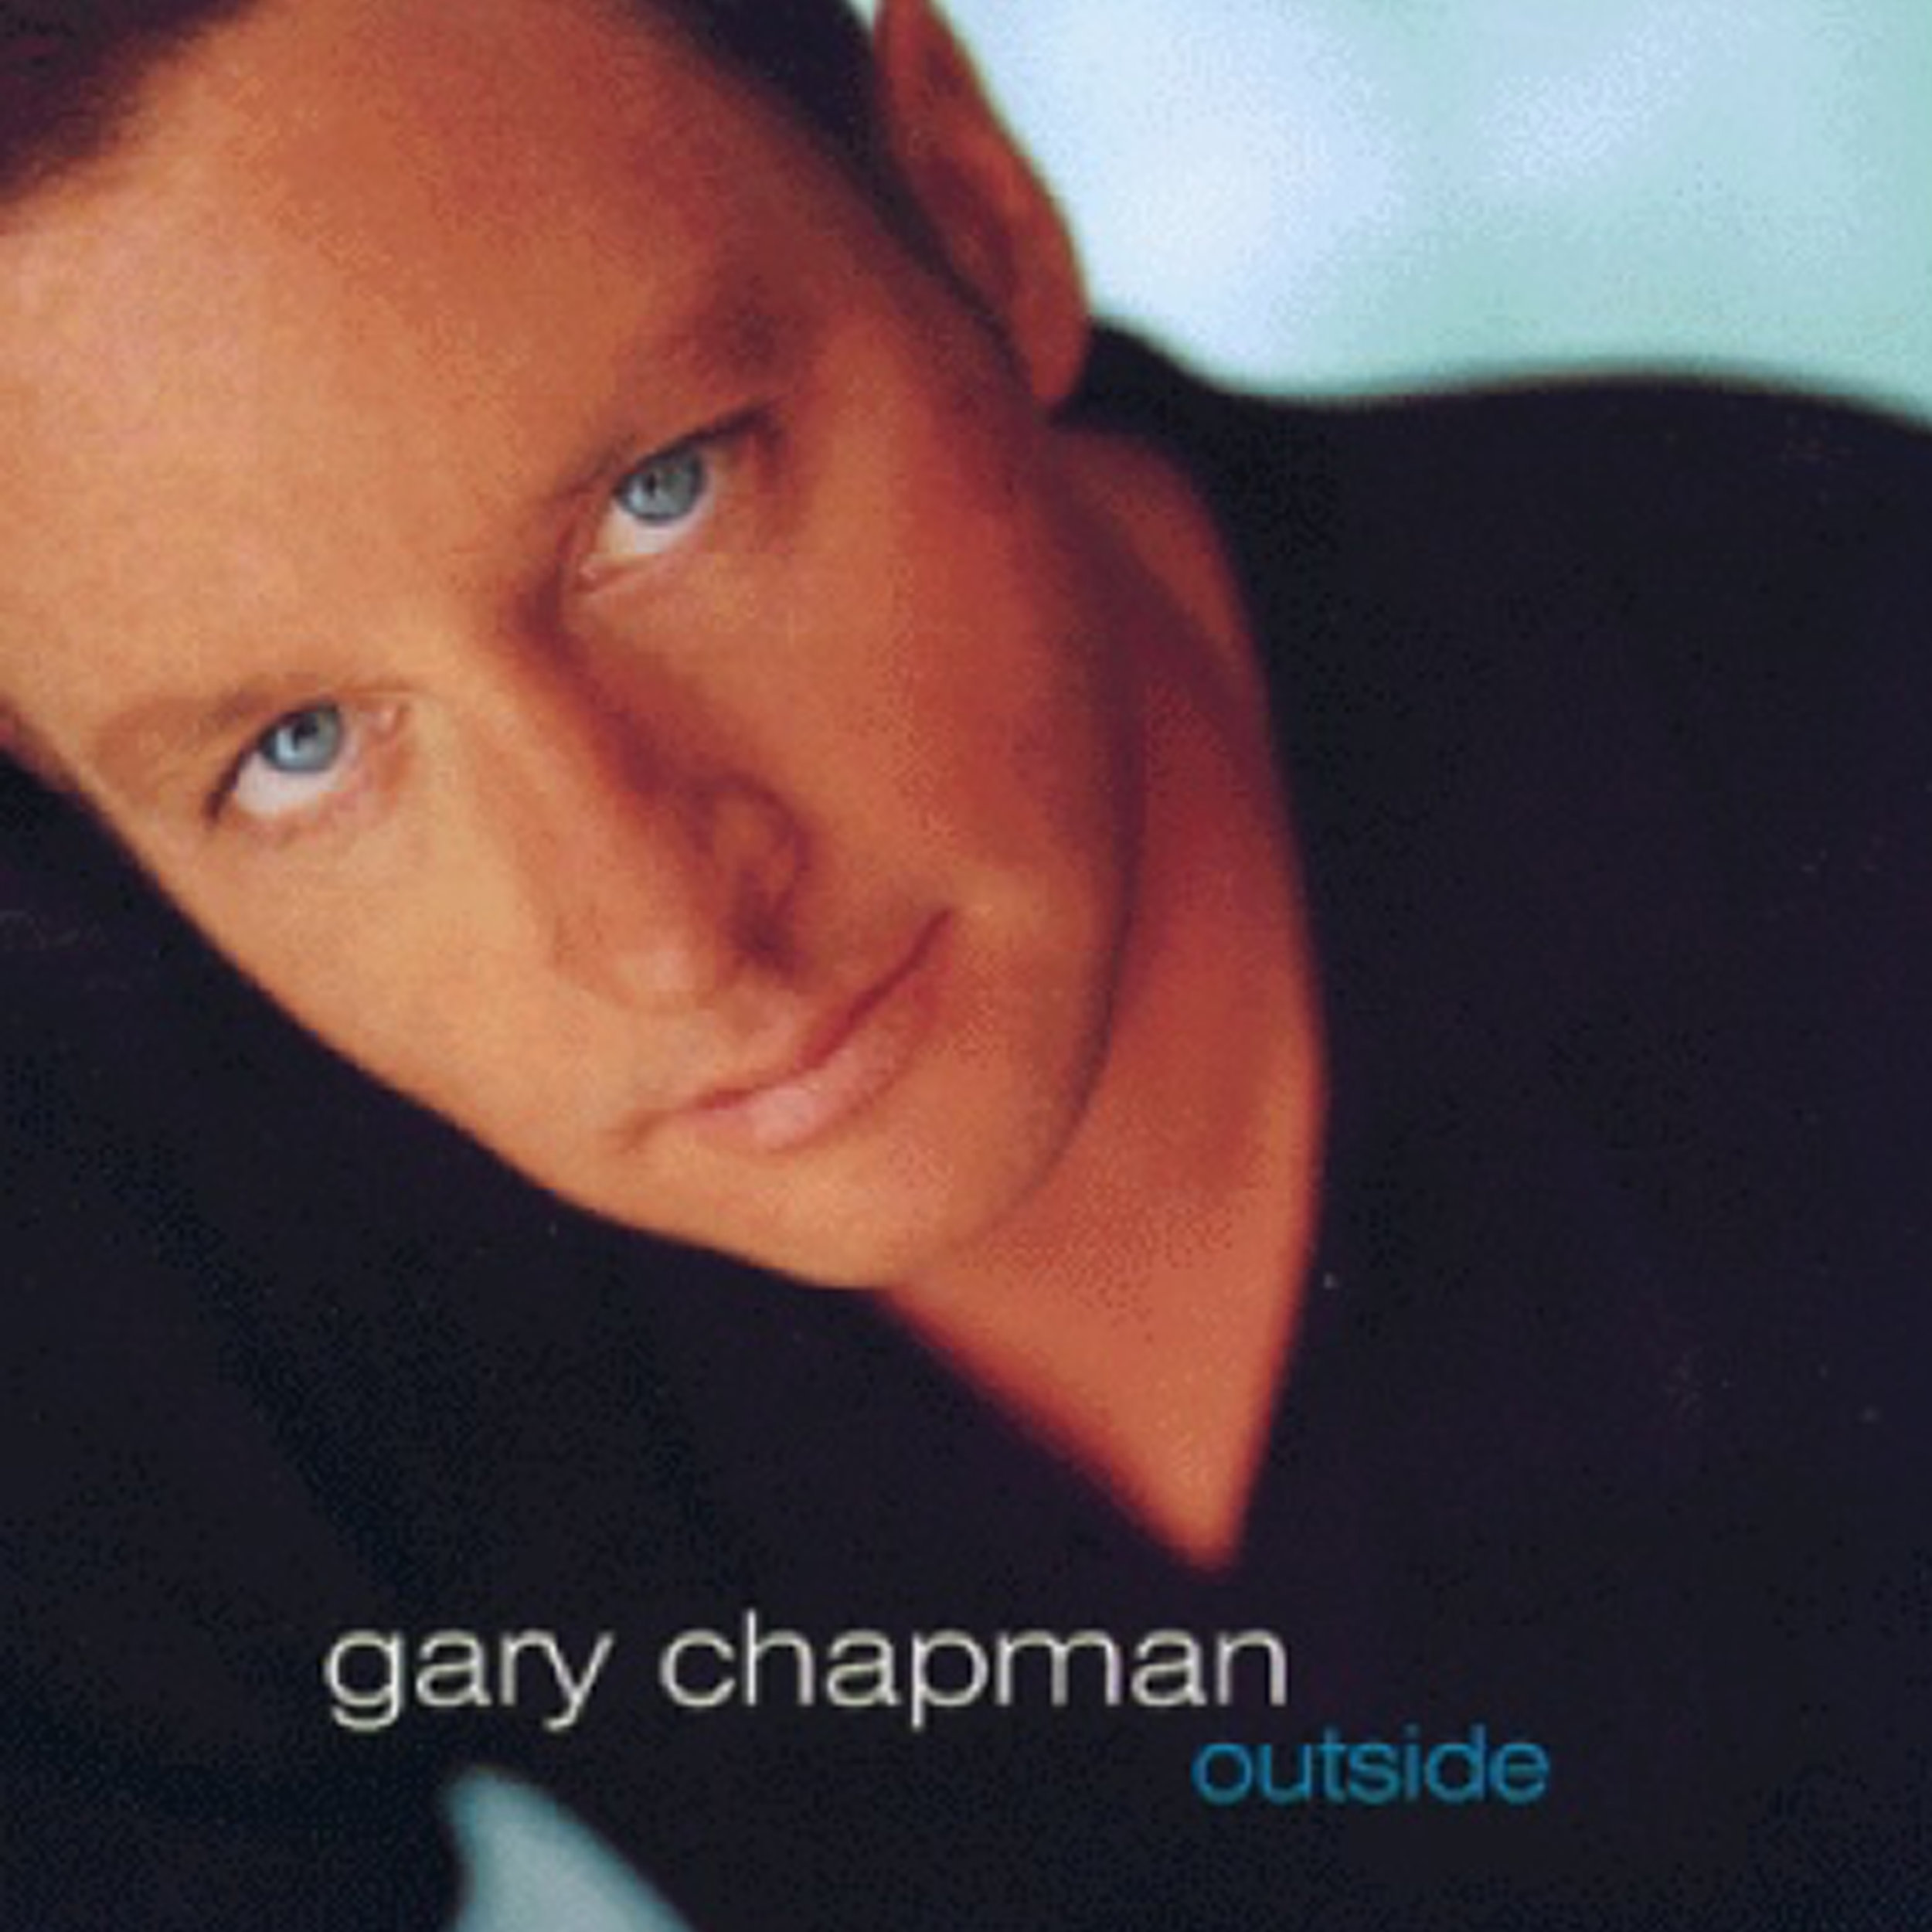 Gary Chapman. Gary Chapman (musician). Gary Chapman (author). Гэри Чепмен фотографии. Гэри чепмен слушать